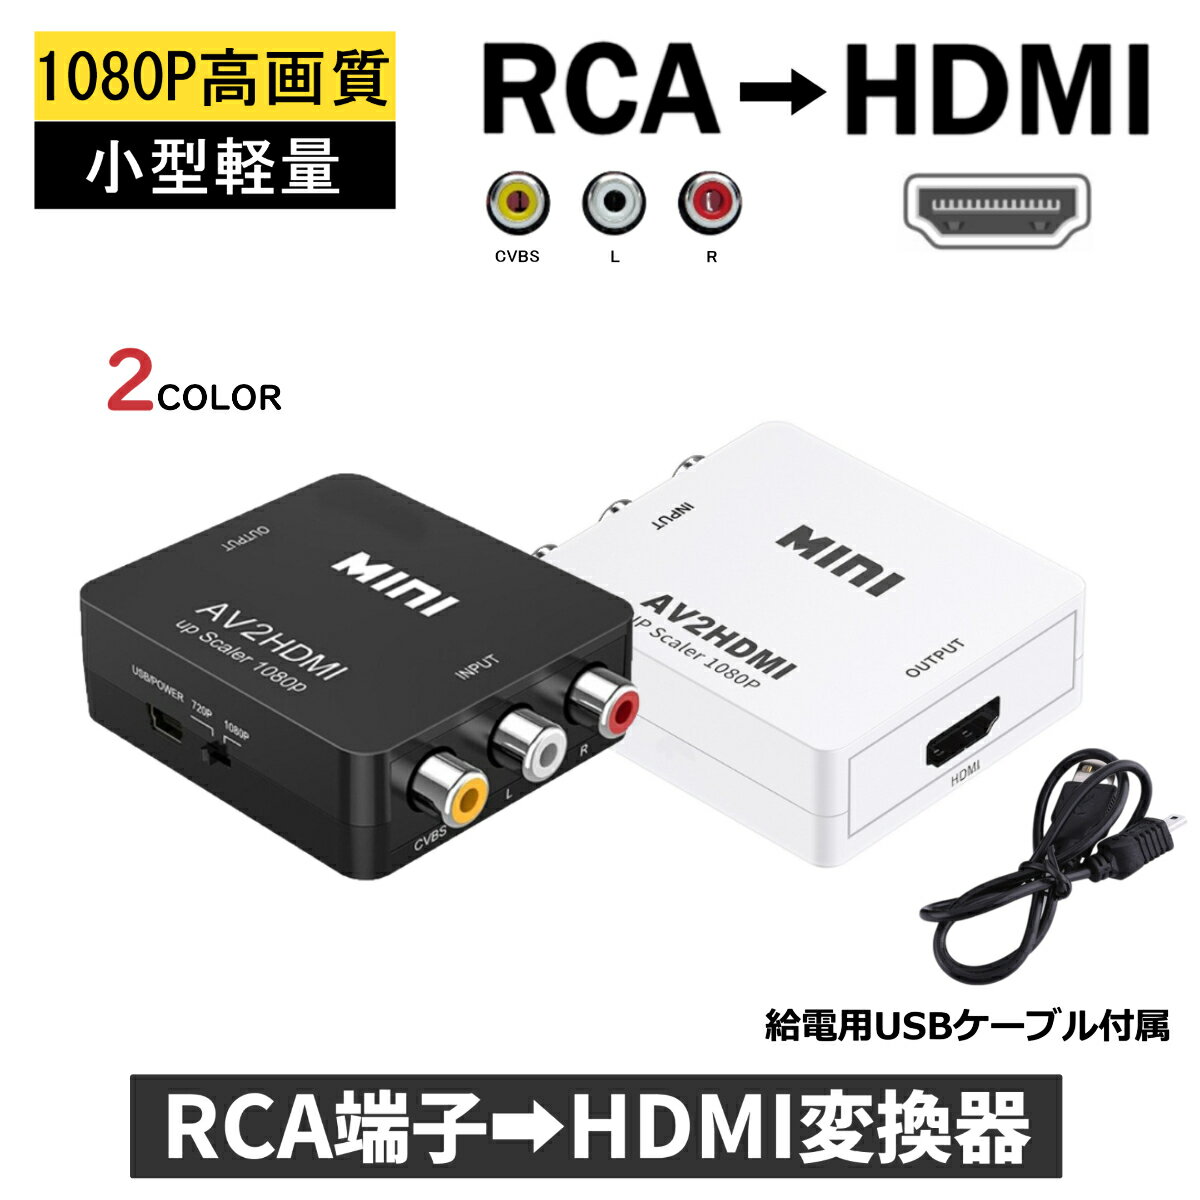 RCA HDMI 変換器 切替器 変換 給電用USBケーブル付き コンポジット AV2HDMI RCA to HDMI変換アダプタ ダウンコンバー…